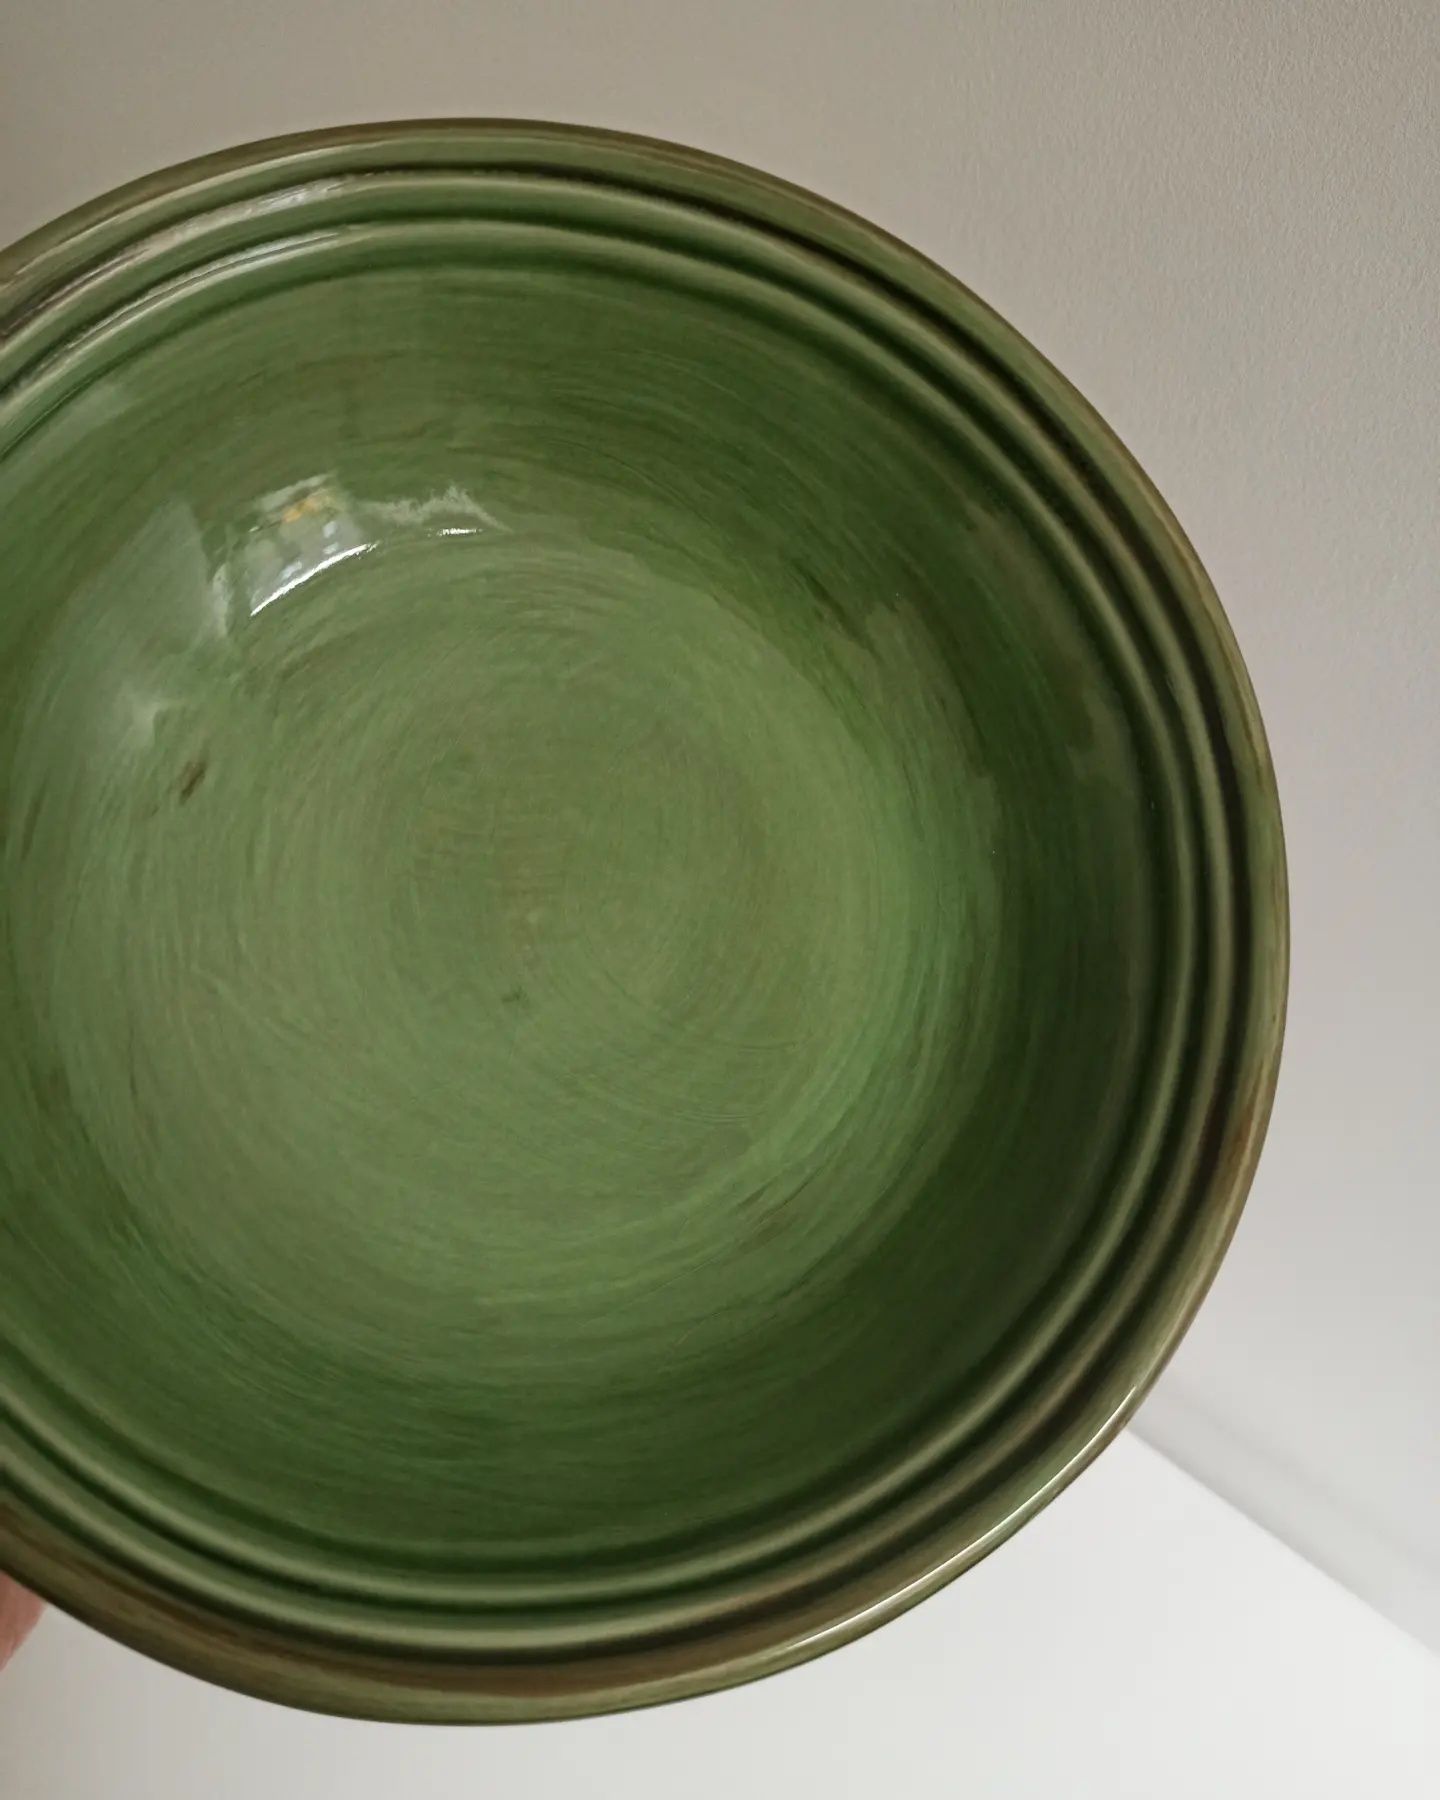 Dwie włoskie misy ceramiczne zielone Vintage